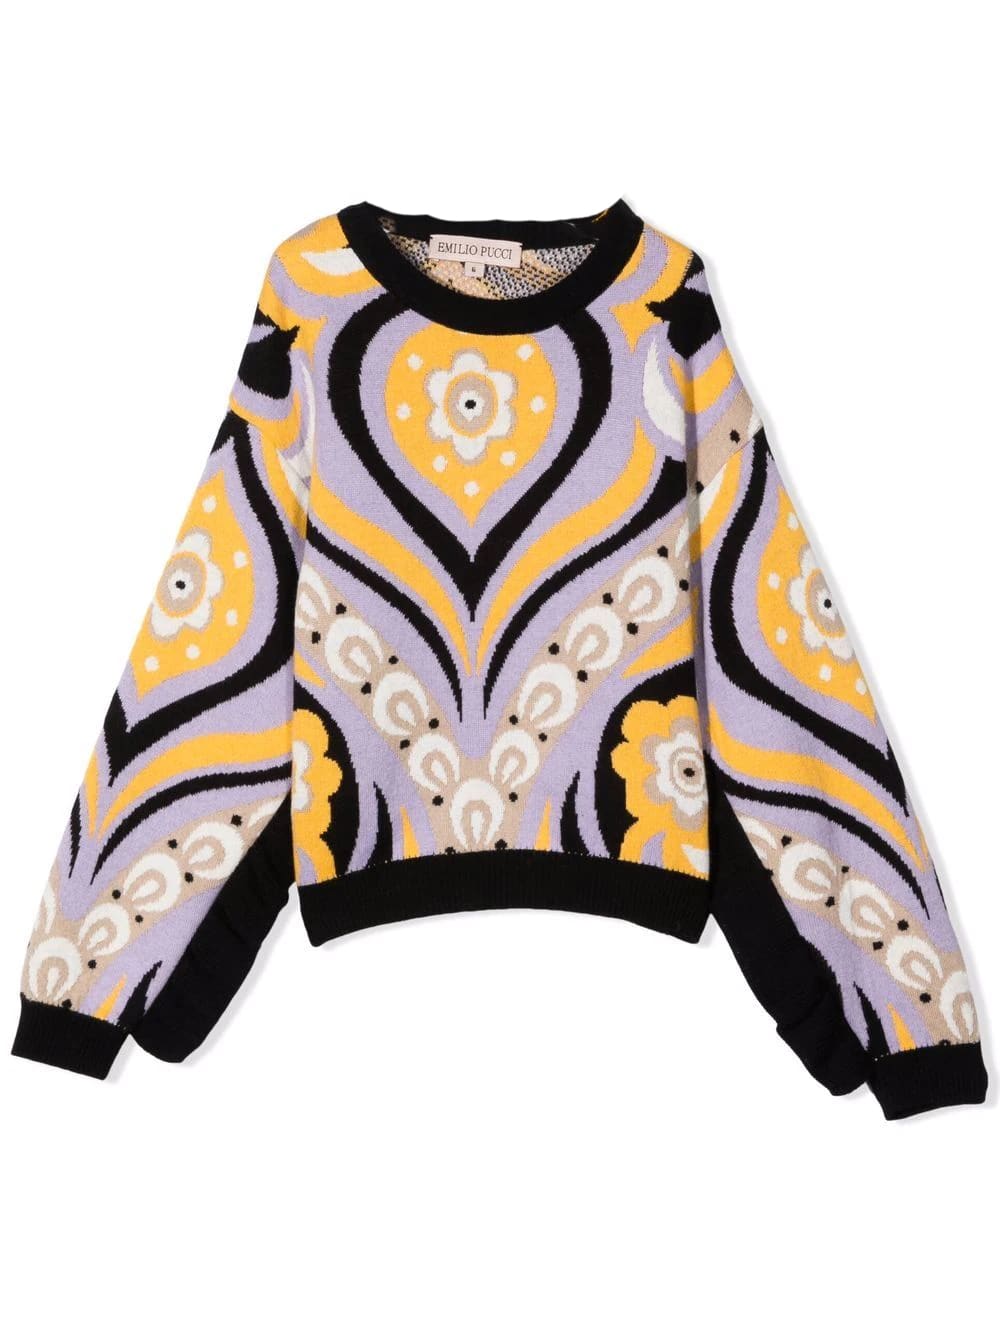 Emilio Pucci Floral Print Sweater